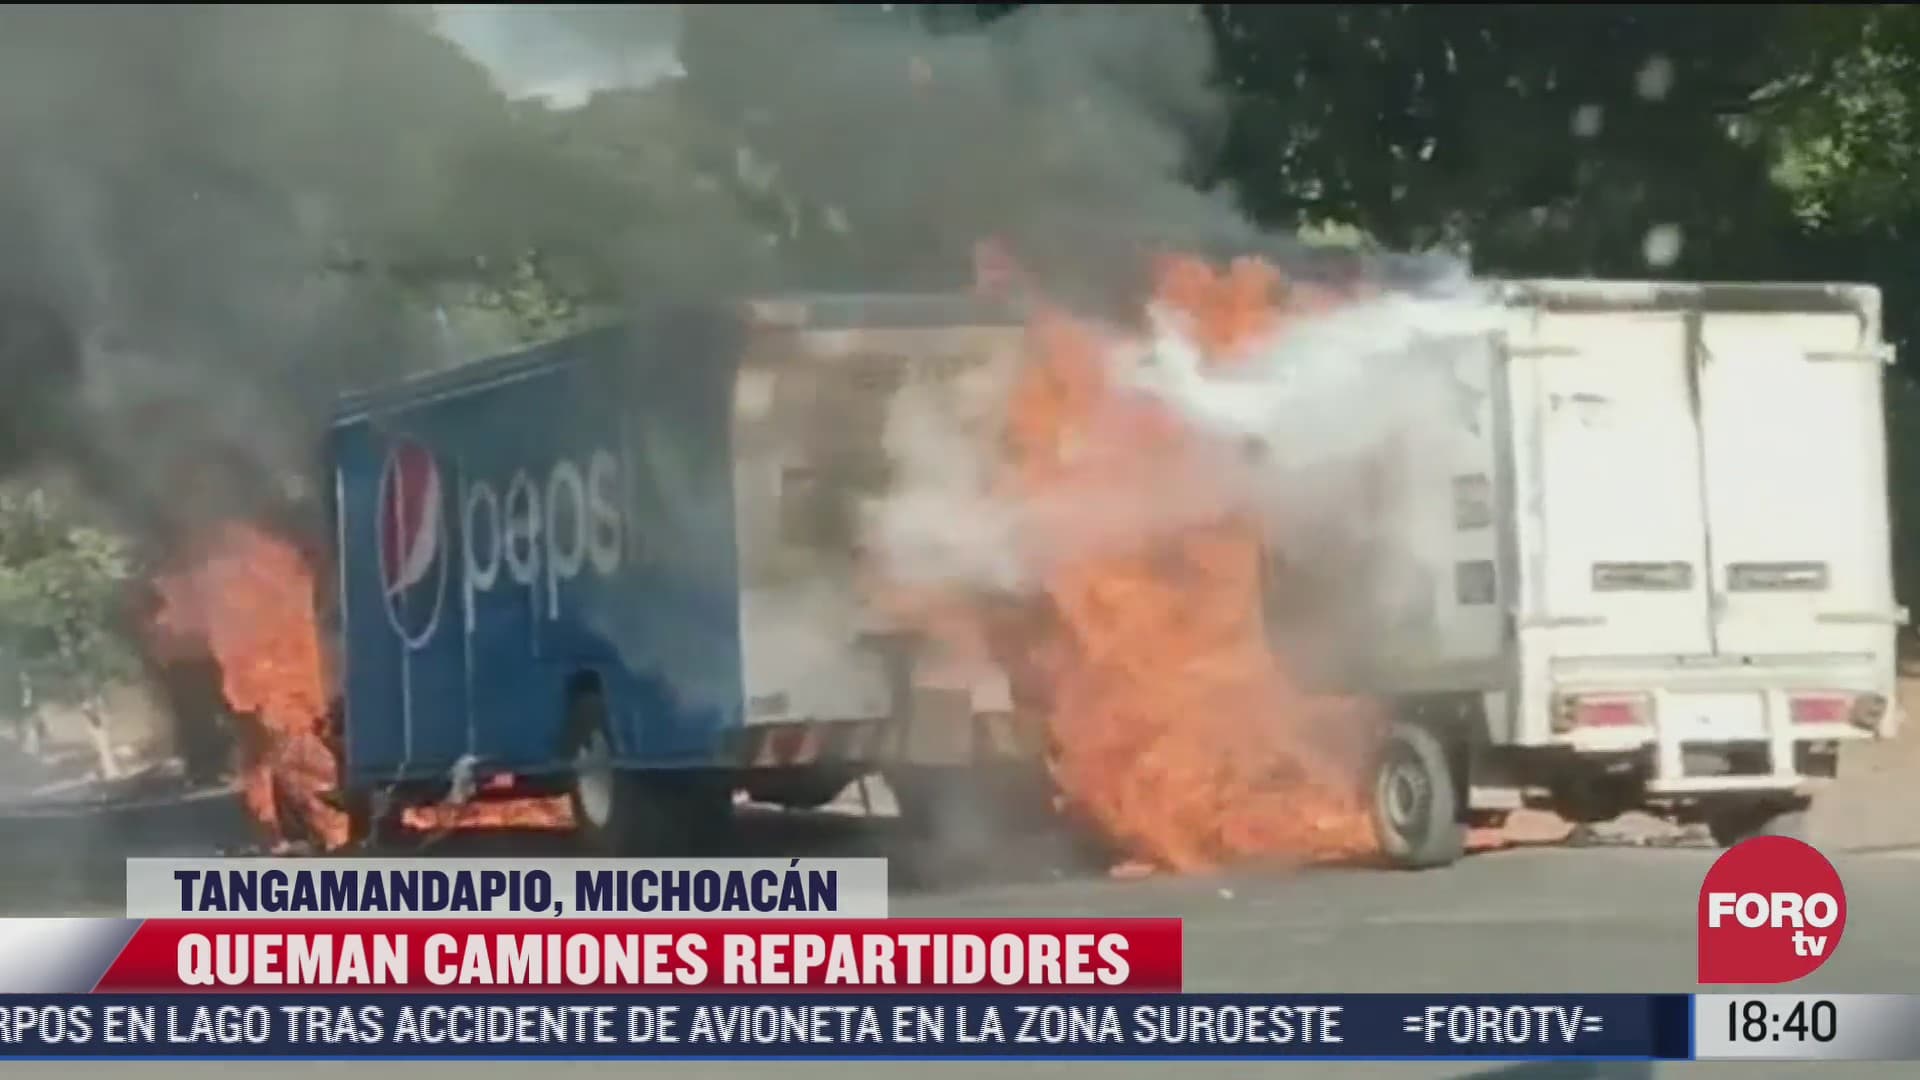 normalistas y cnte queman camiones de paqueteria en tarecuato michoacan